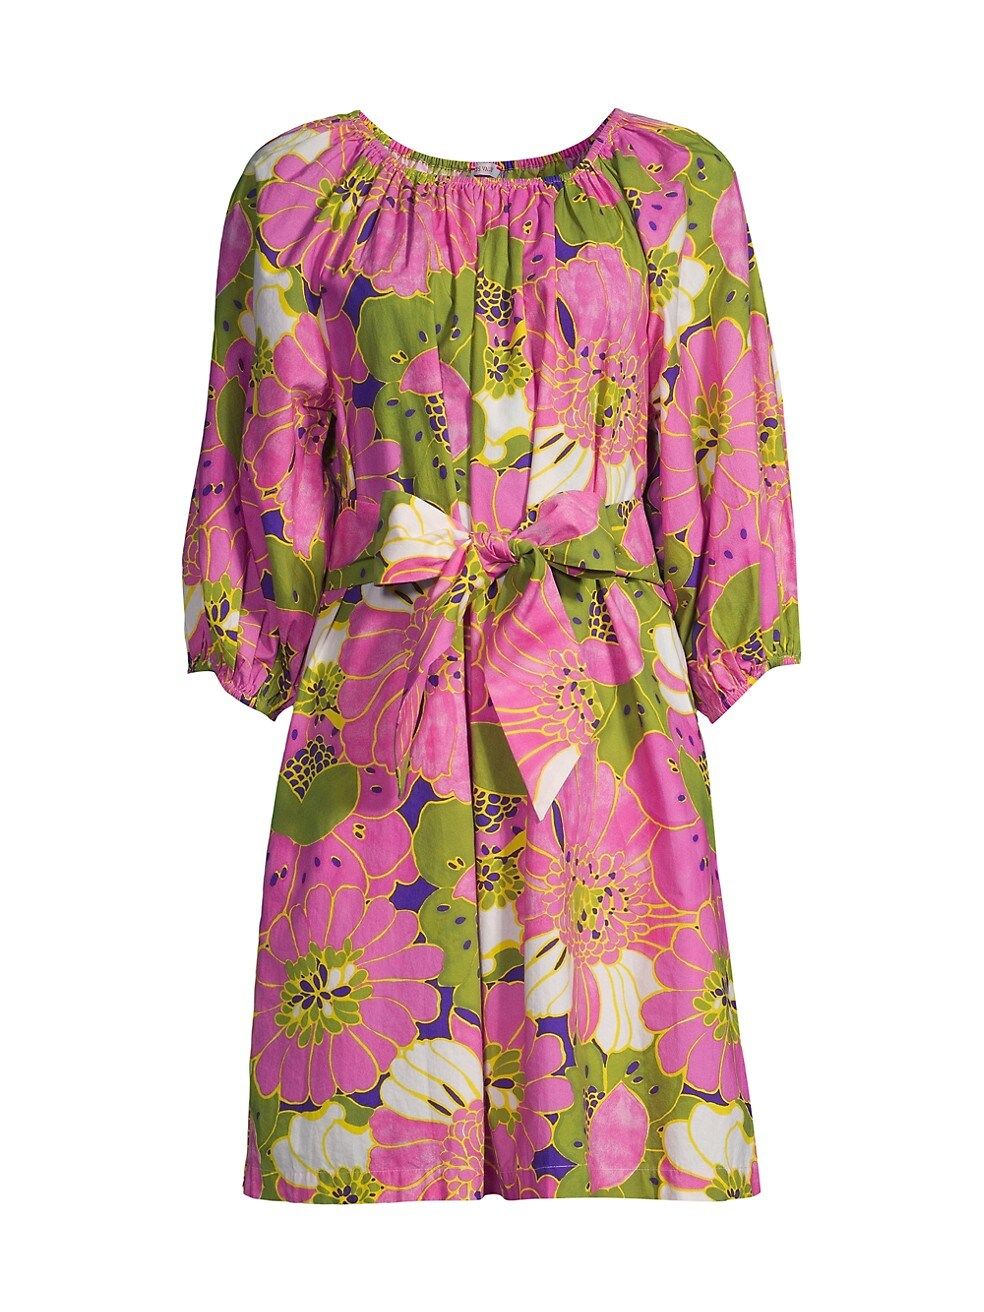 FRANCES VALENTINE Bliss Belted Floral Minidress | Saks Fifth Avenue